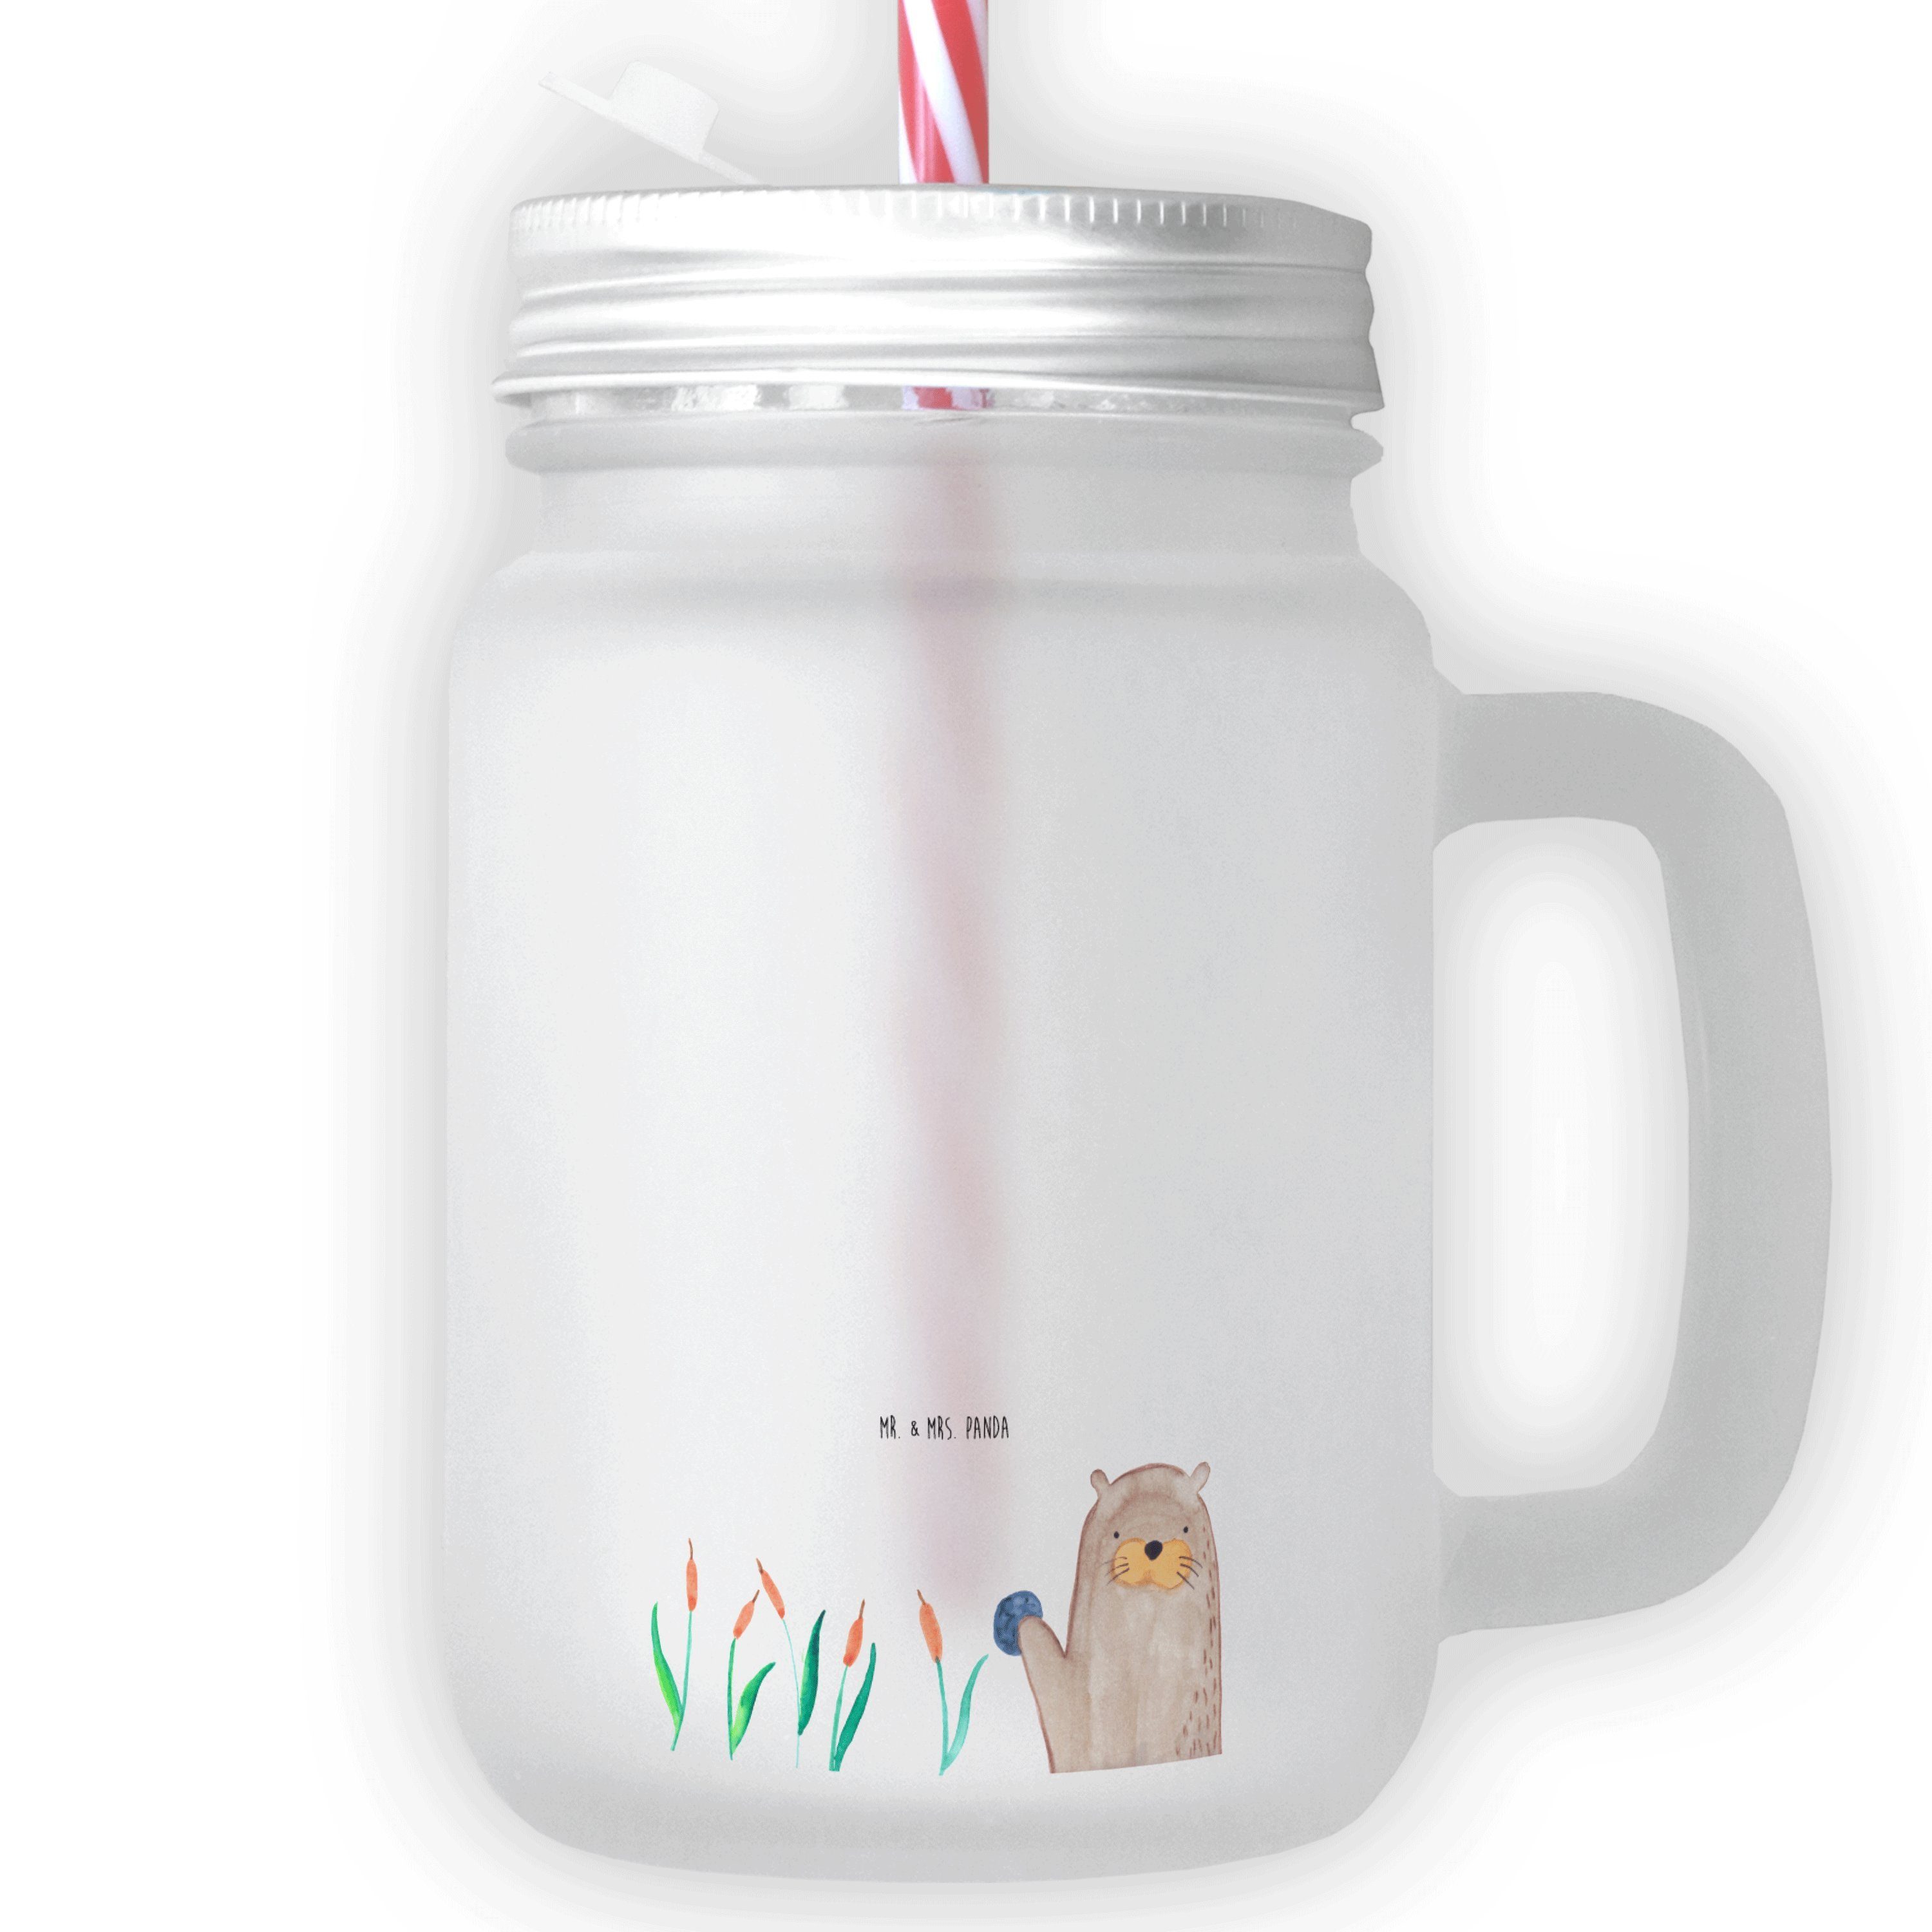 Mr. & Mrs. Panda Glas Otter mit Stein - Transparent - Geschenk, Strohhalm Glas, Otter Seeot, Premium Glas